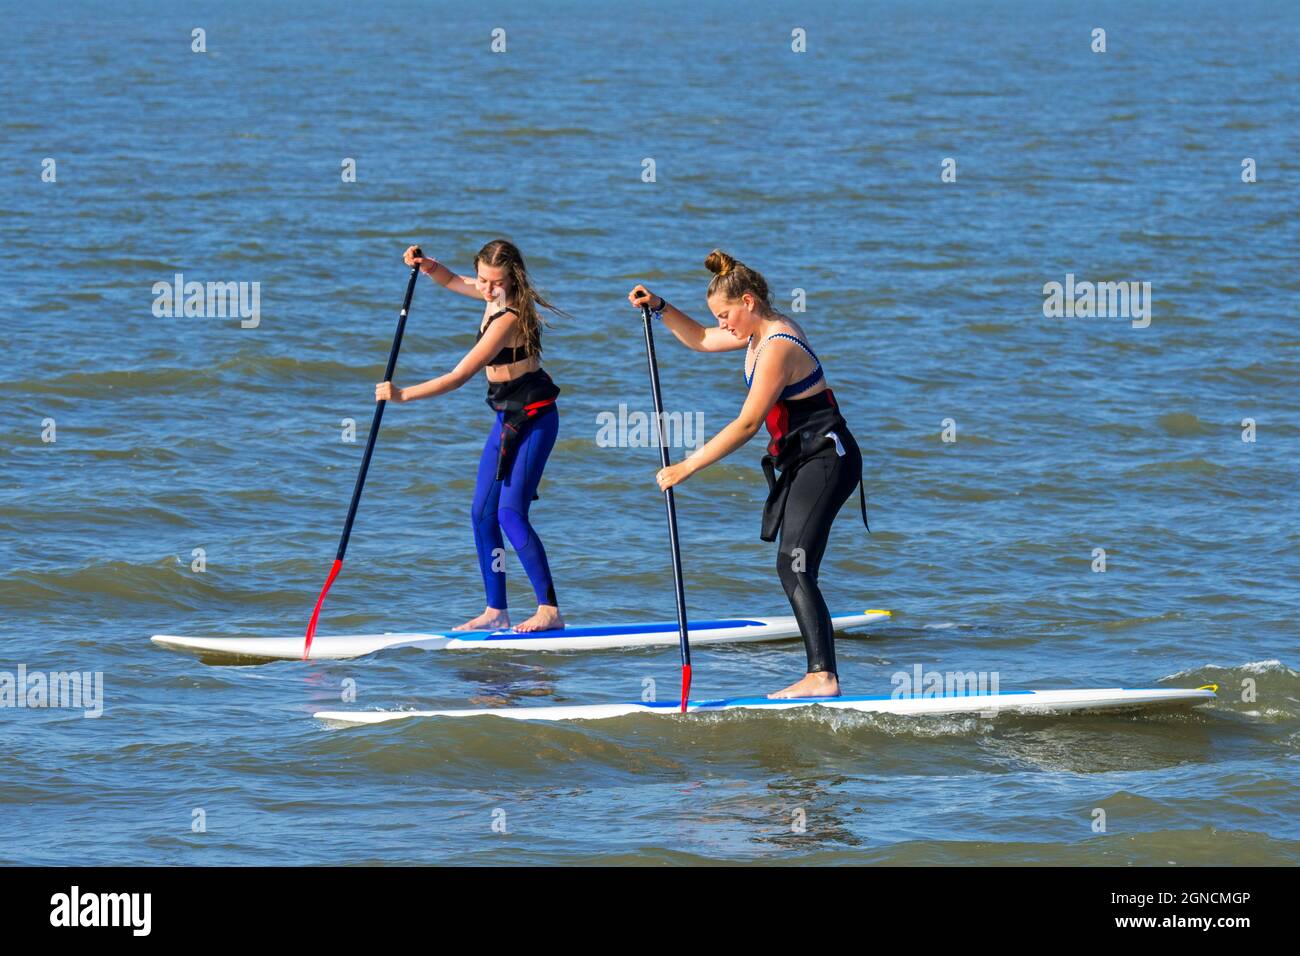 Dos paddleboard mujeres practicando el surf de remo de deportes acuáticos / stand up paddle boarding / SUP a lo largo de la costa del Mar del Norte Foto de stock